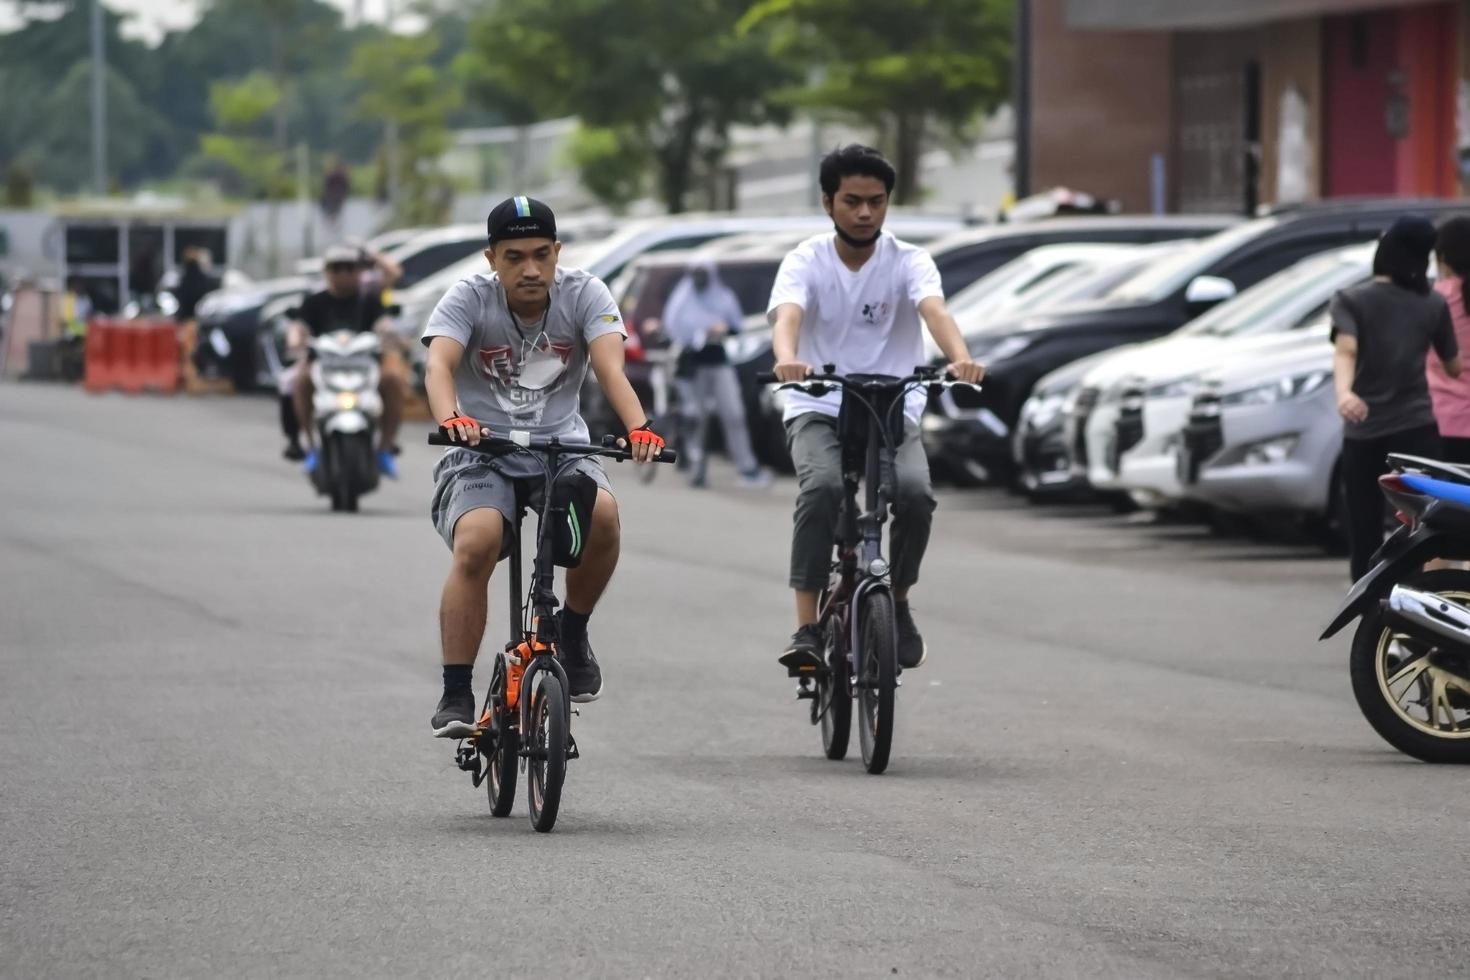 bekasi, west java, indonesië, 5 maart 2022. mensen oefenen fietsen in stadspark op zaterdag foto